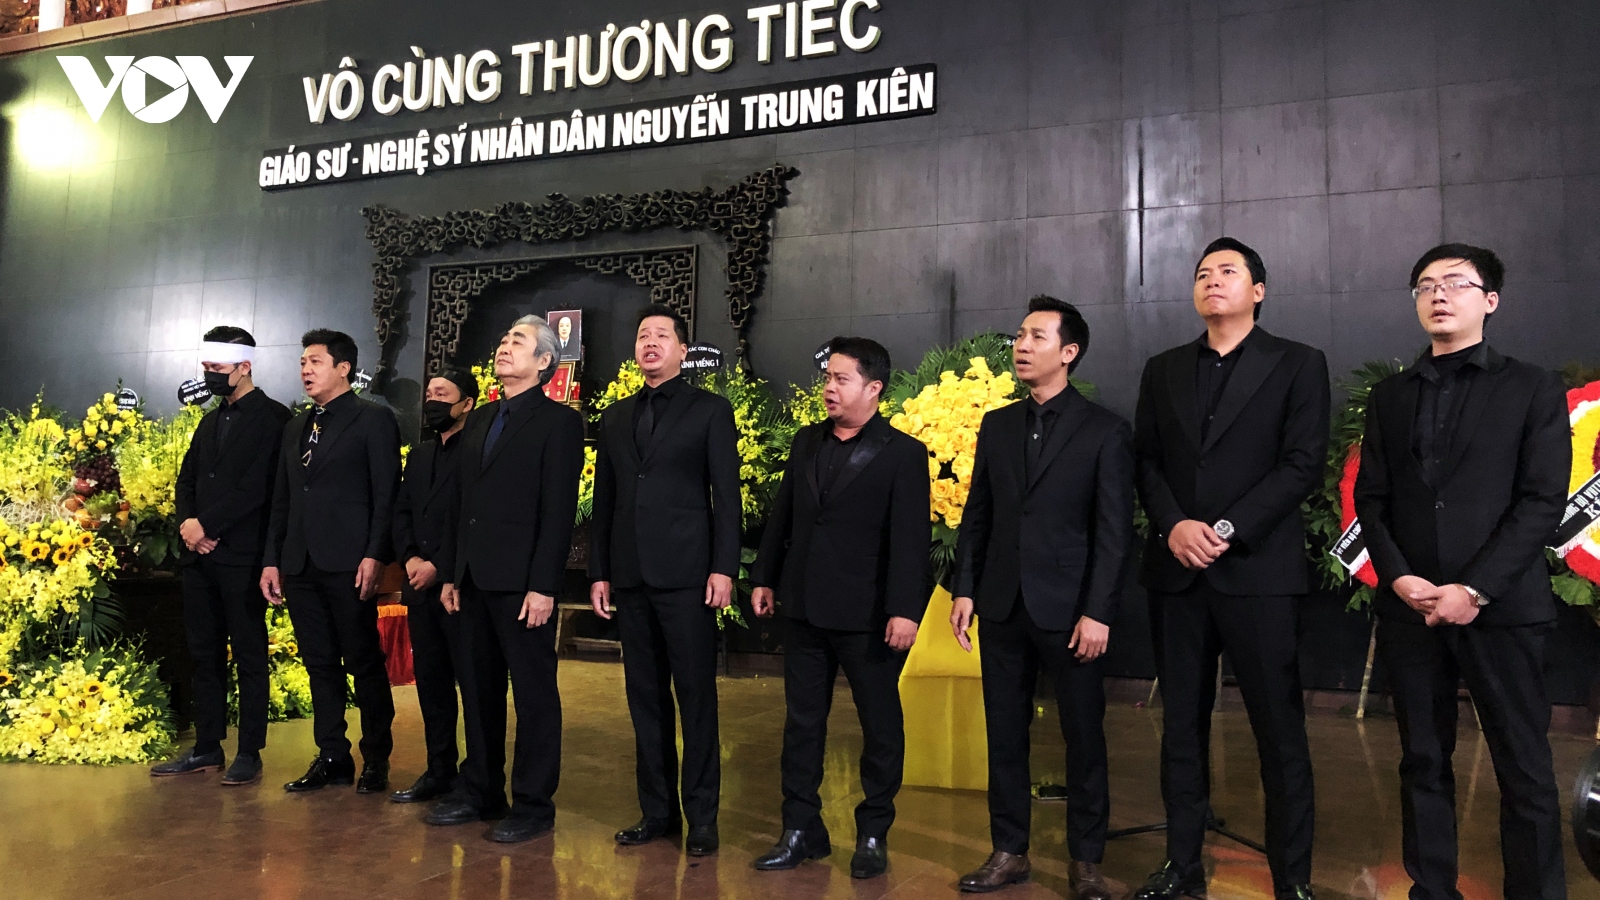 Đồng nghiệp, học trò nghẹn ngào hát "Tình ca" tiễn biệt NSND Trung Kiên